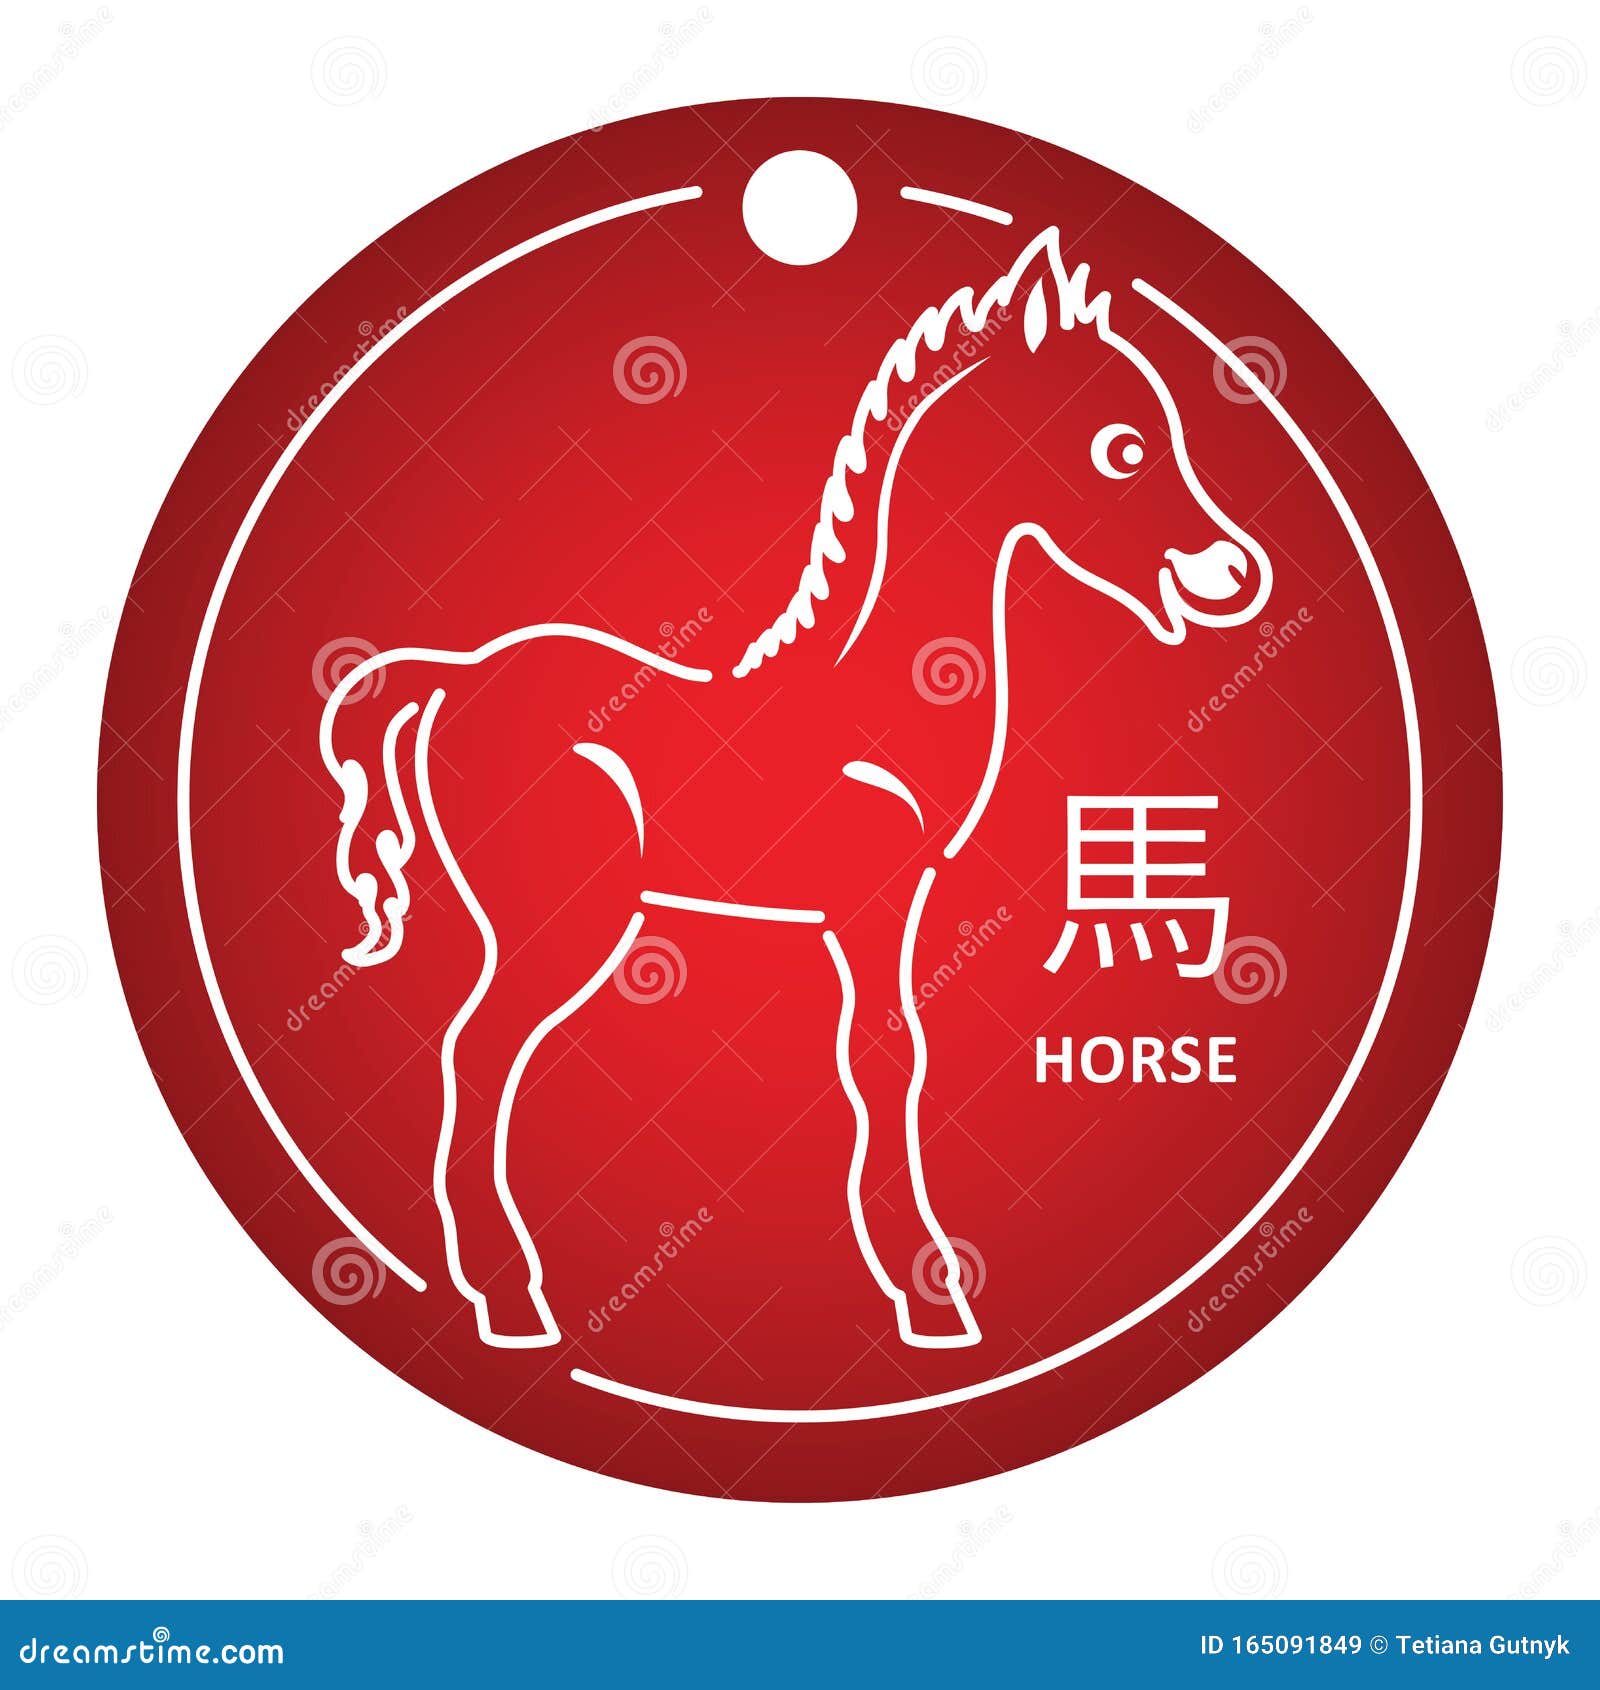 2019 год лошадь. Лошадь знак зодиака. Табличка для коня. Какие года знака лошадь. Город на гербе которого изображен конь на Красном фоне 5 букв.